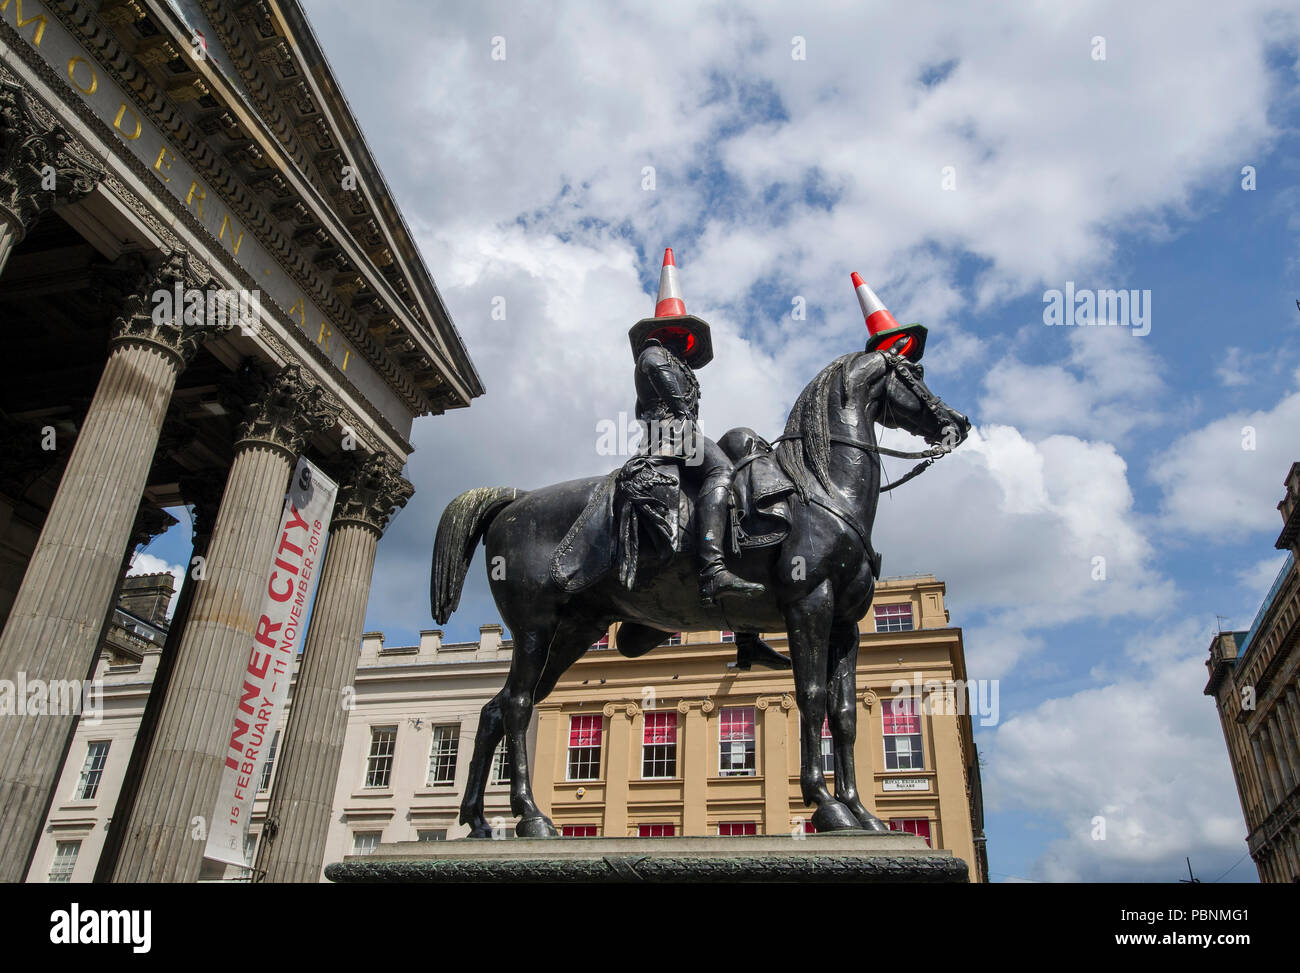 Der Pferdesport Wellington Statue ist eine Statue von Arthur Wellesley, 1. Herzog von Wellington, auf der Royal Exchange Square, Glasgow, Schottland. Stockfoto